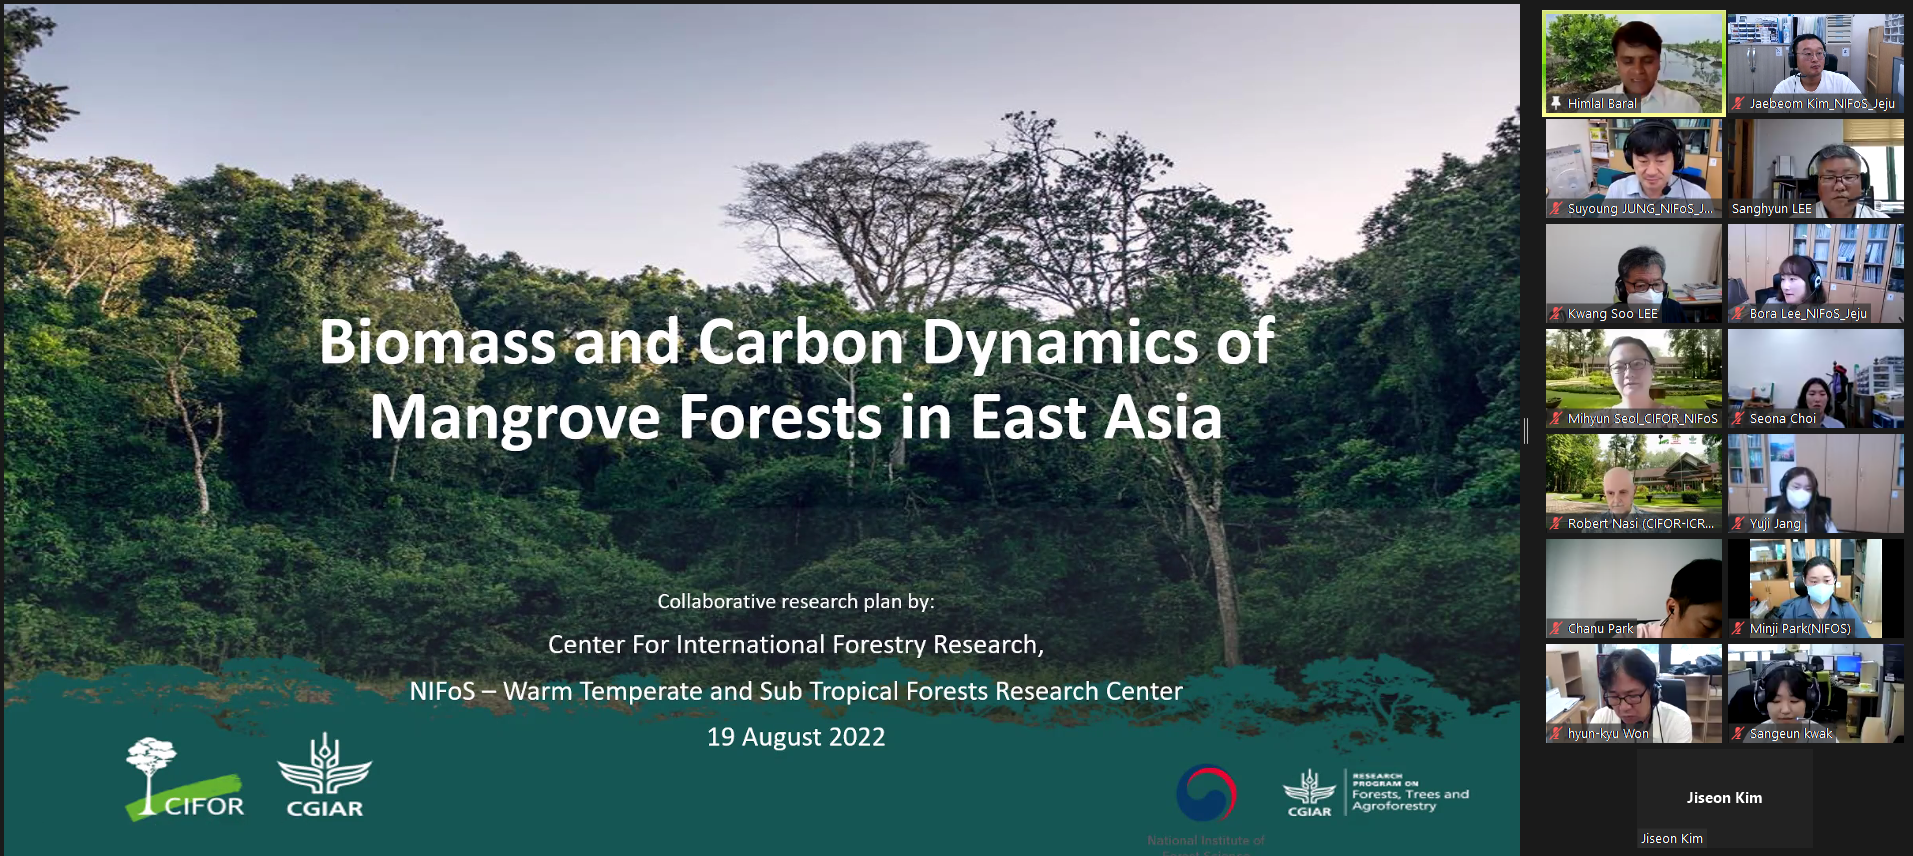 난대·아열대산림연구소, 국제임업연구센터와 기후변화 대응 국제공동연구 추진